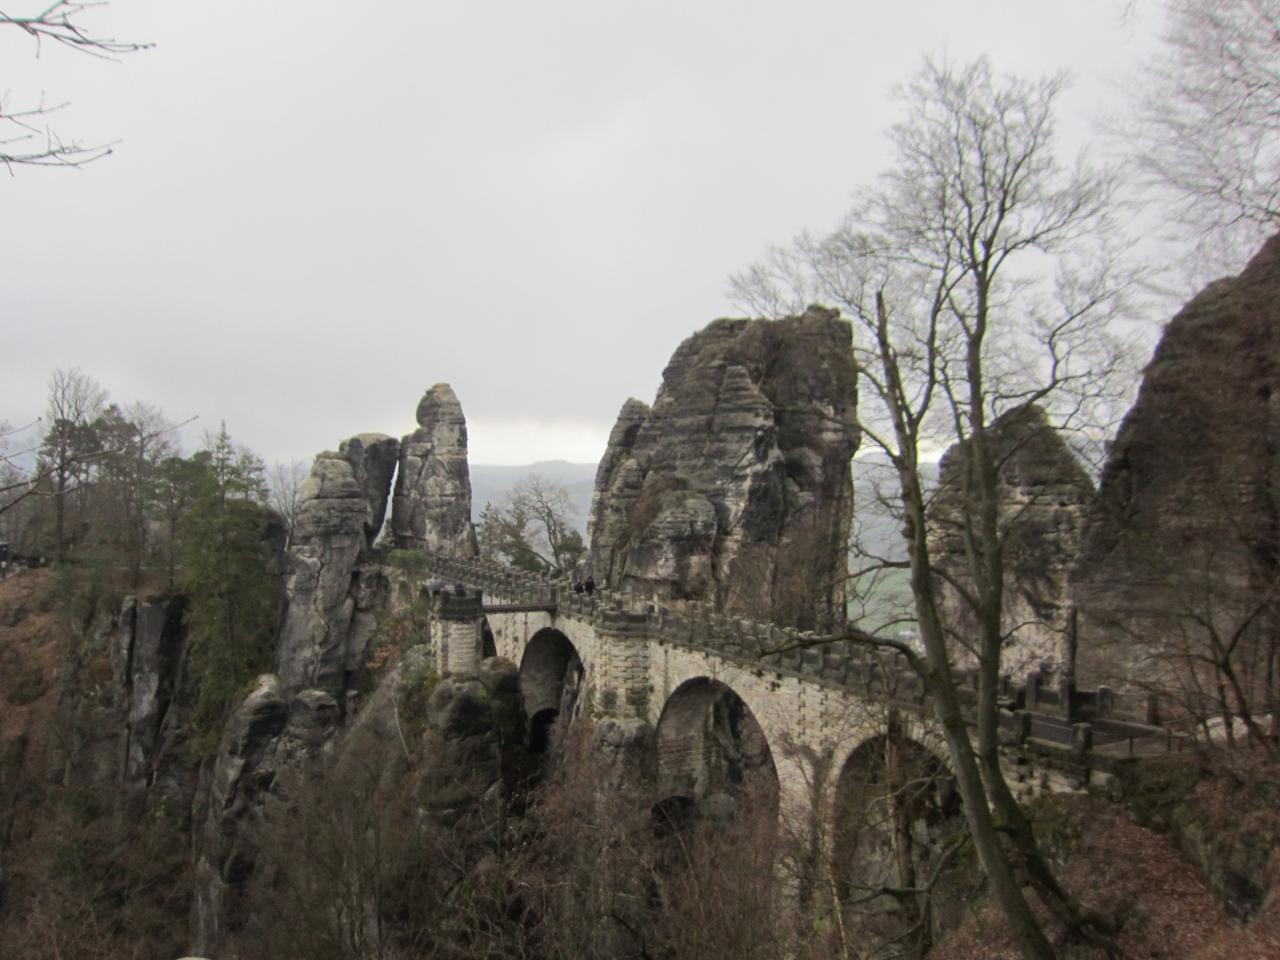 雨 いやみぞれのバスタイ橋 寒かった ザクセン州 ドイツ の旅行記 ブログ By Fannさん フォートラベル